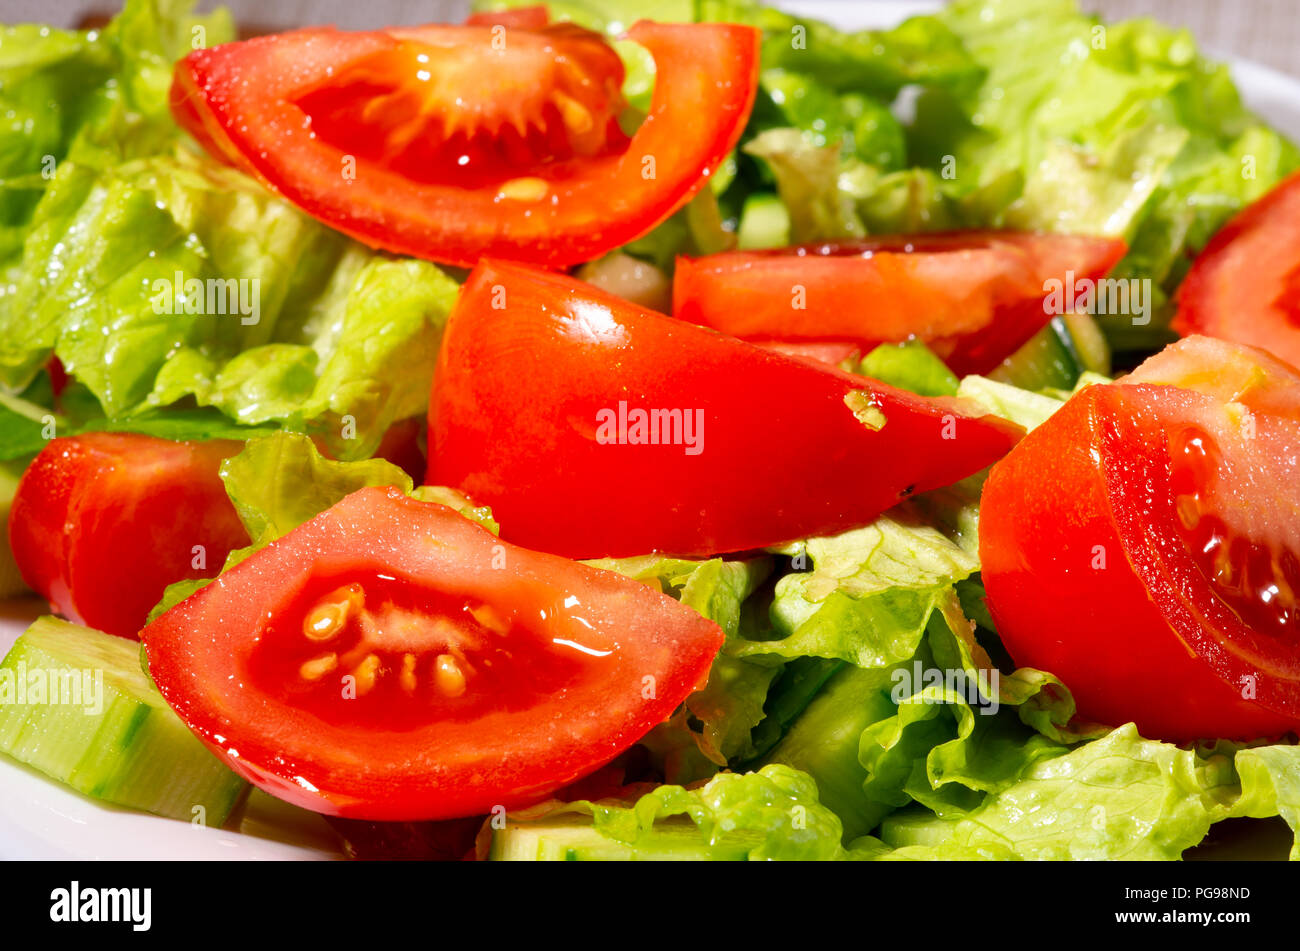 Fragment de plat fait à partir de morceaux de concombres, tomates, épinards et laitue close-up avec blur. Banque D'Images